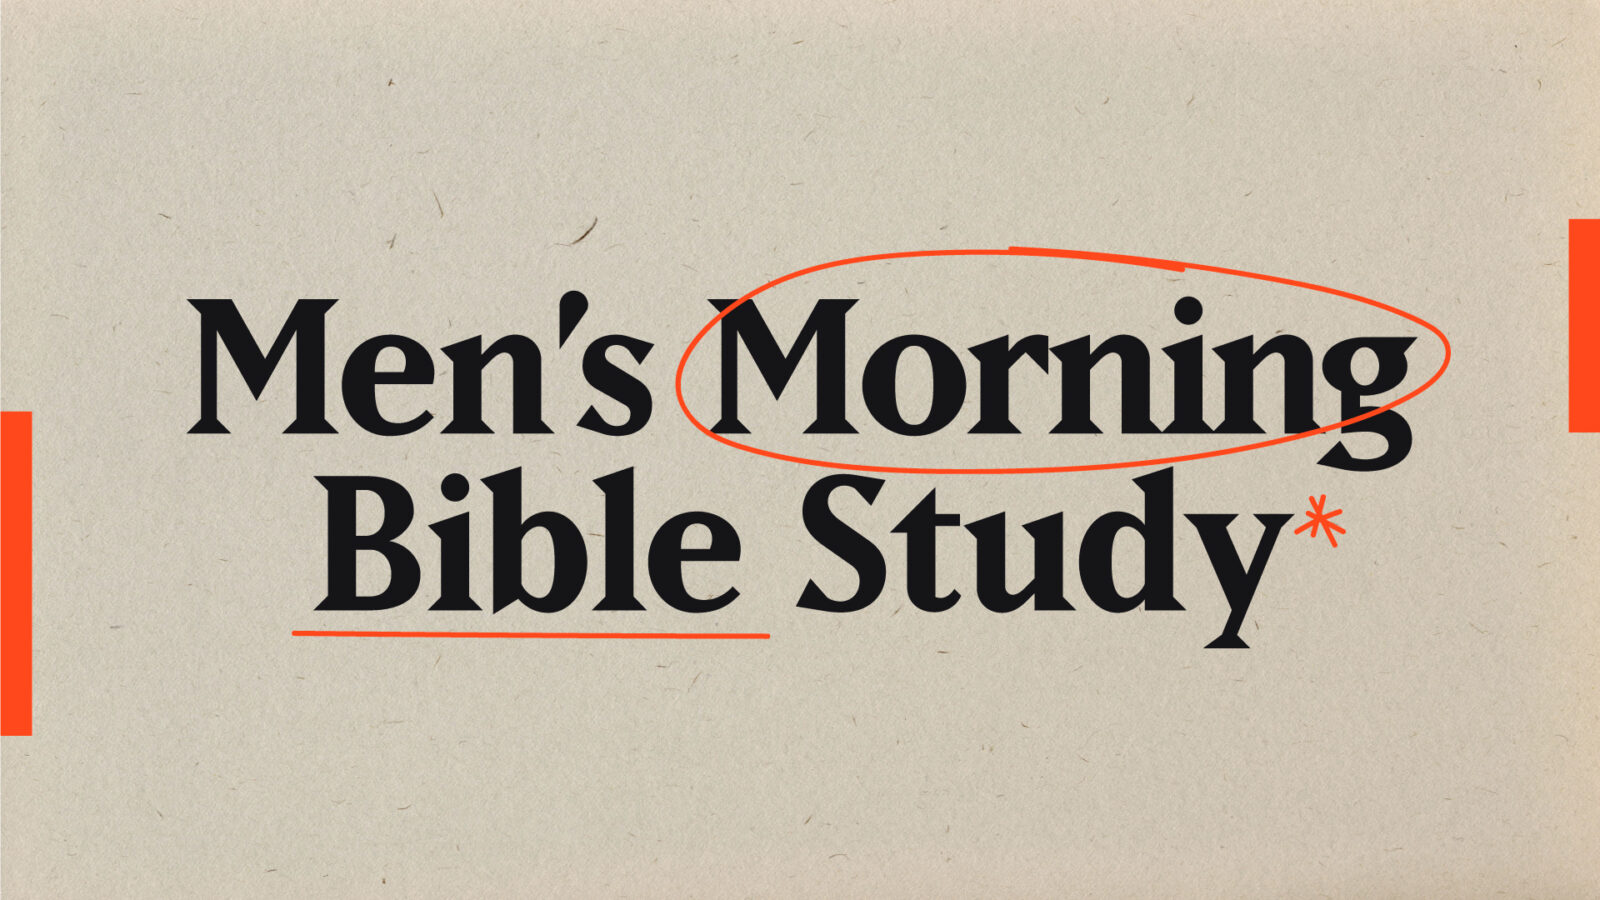 MEN'S MORNING BIBLE STUDY